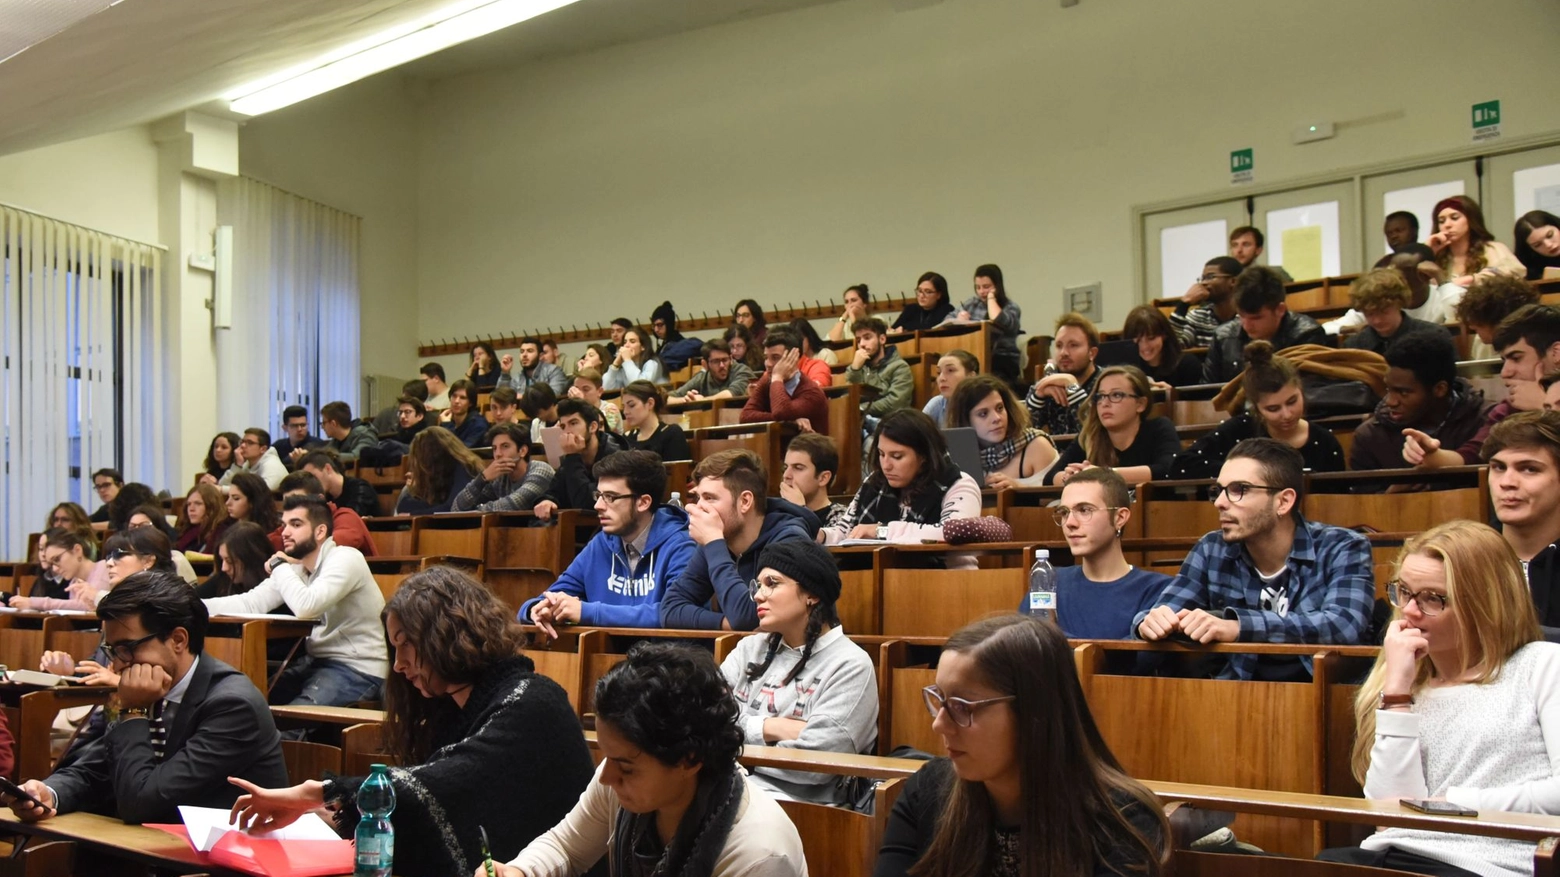 Universitari in una foto d'archivio Crocchioni